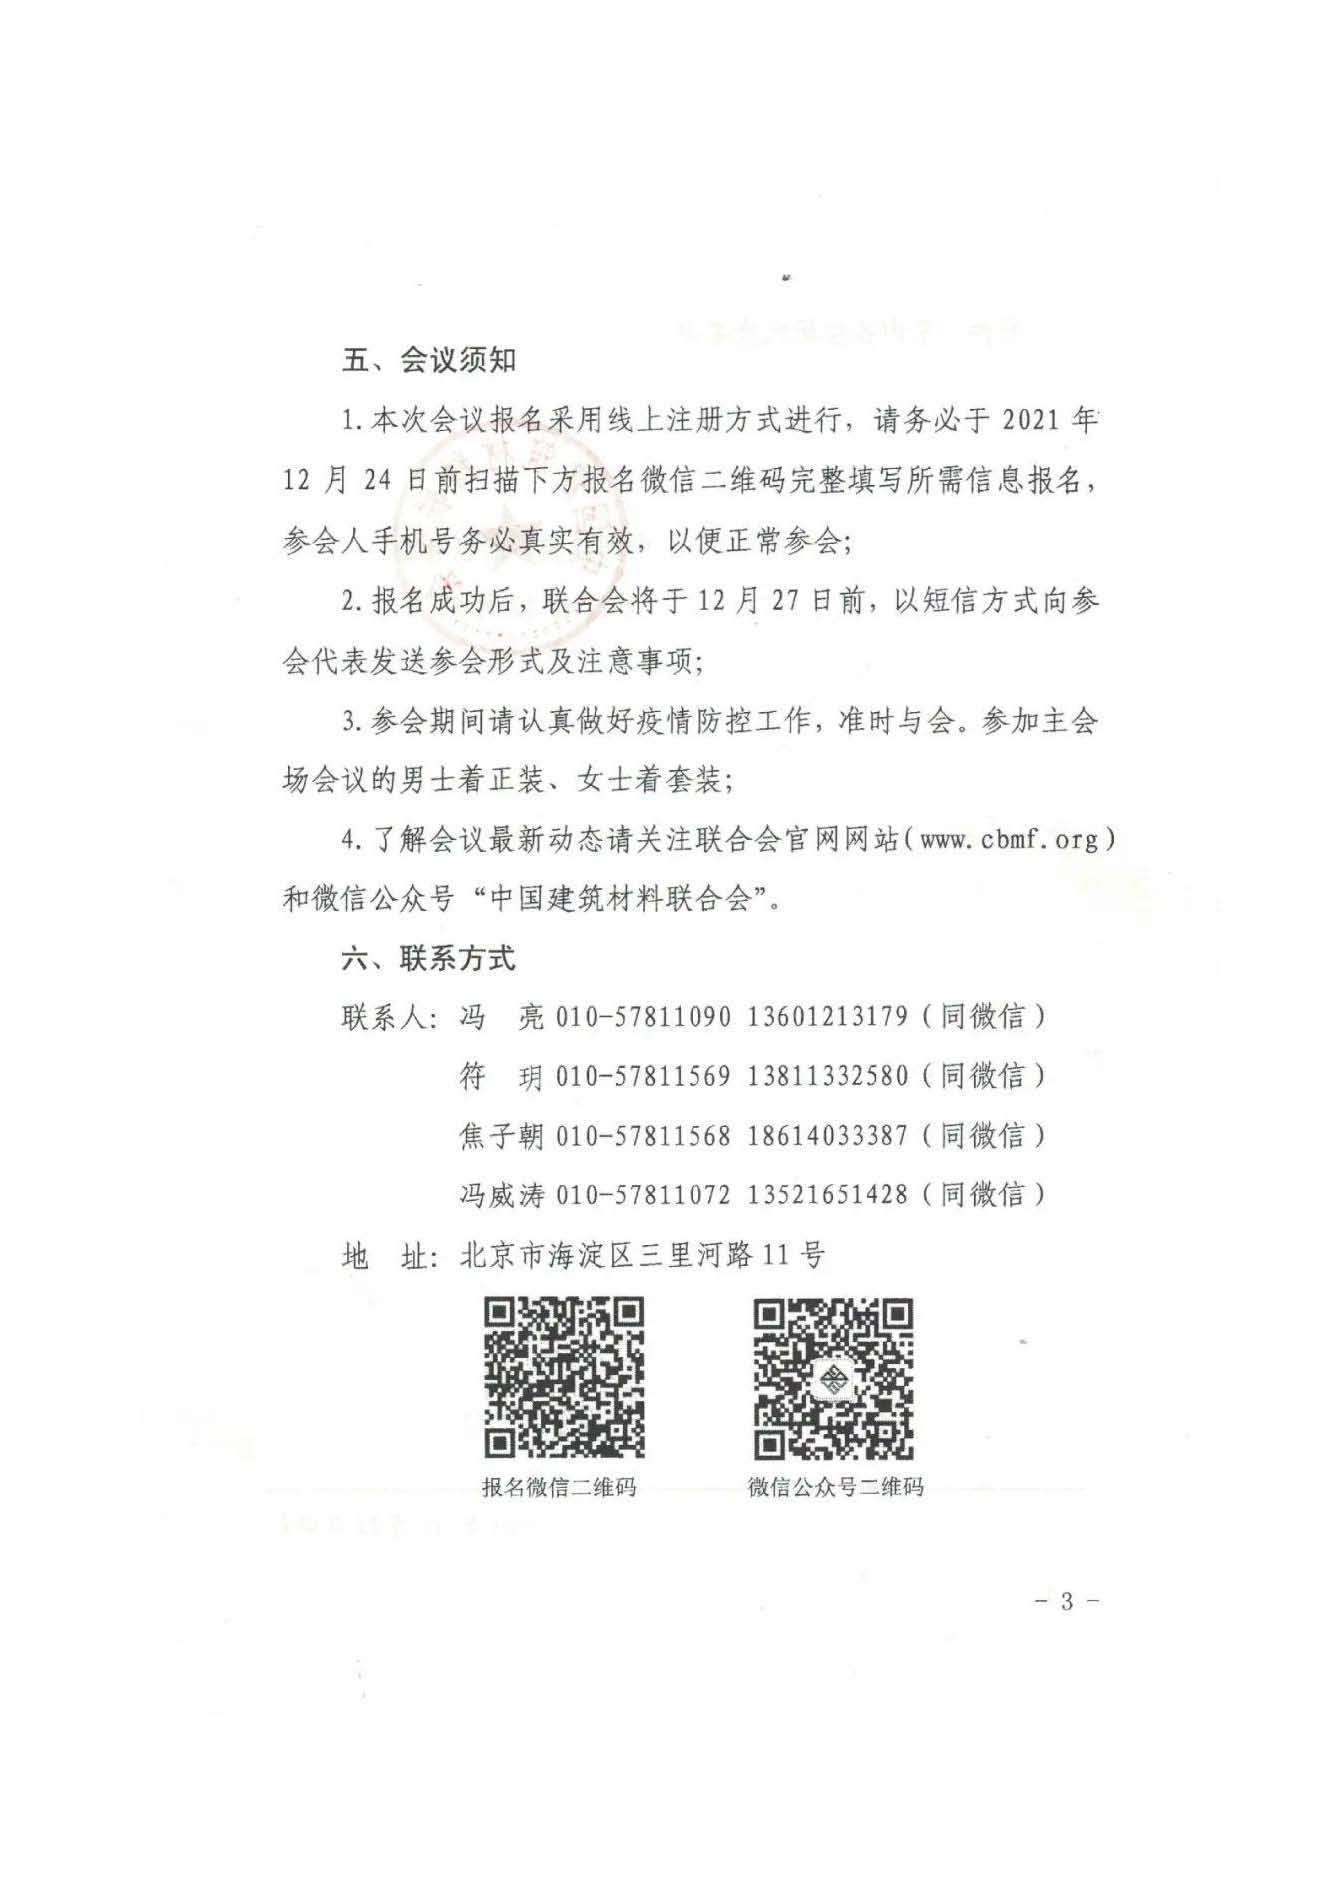 高德1970注册
中国建筑材料联合会六届理事会二次会议（视频）即将召开